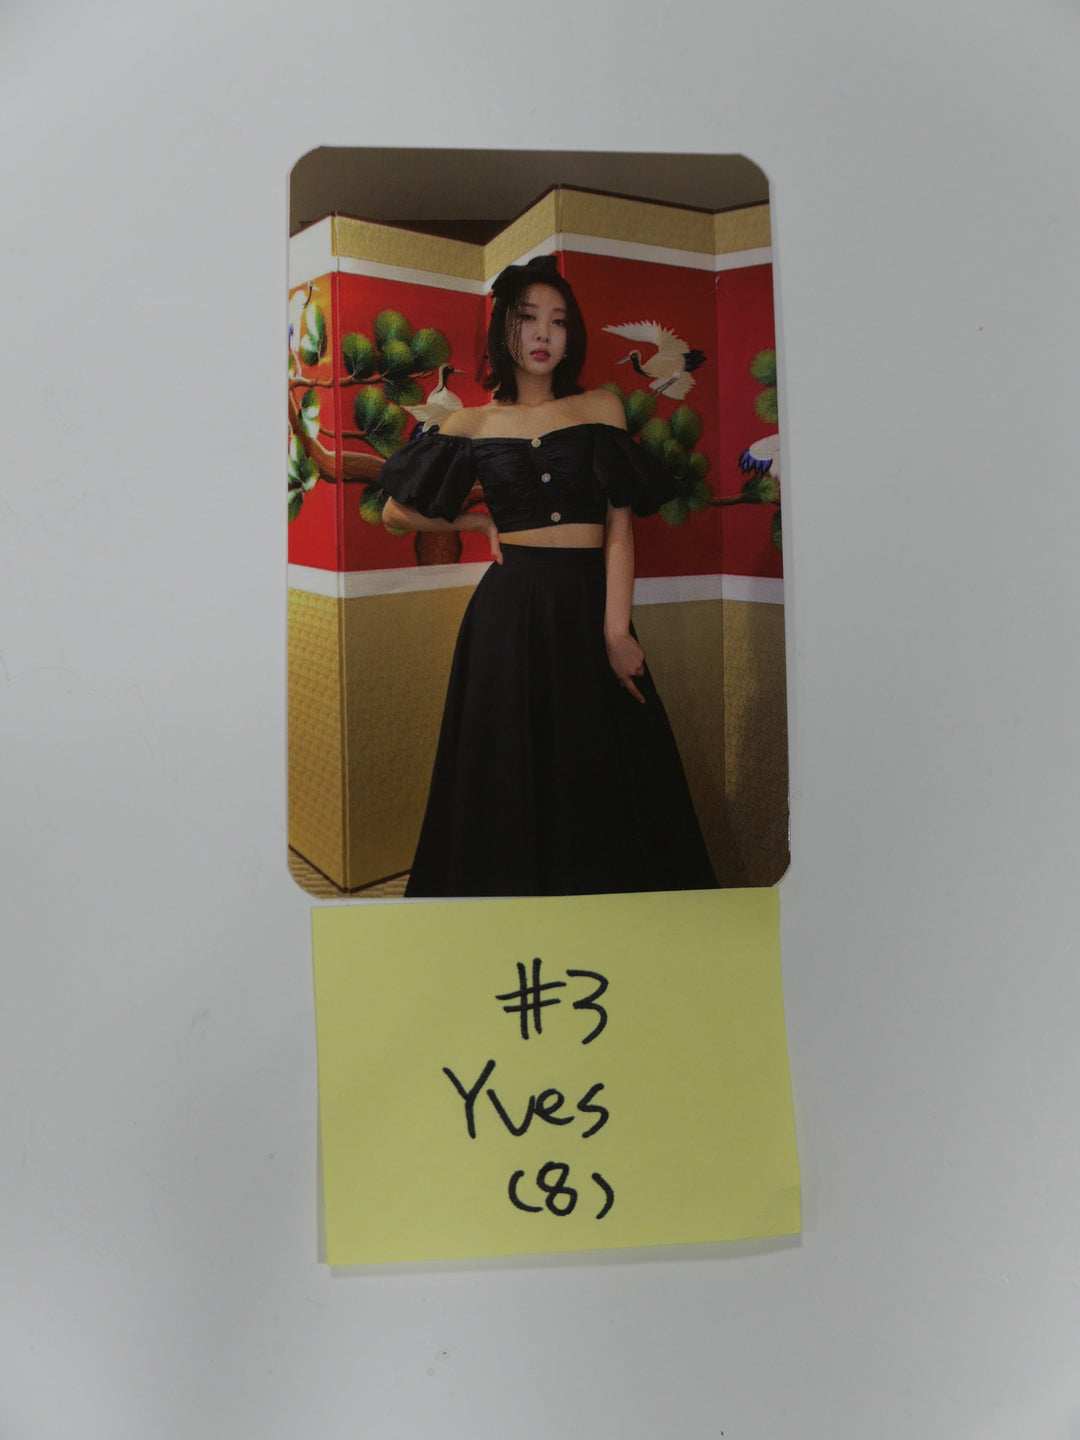 이달의 소녀 12:00 - 공식 포토카드 - 이브